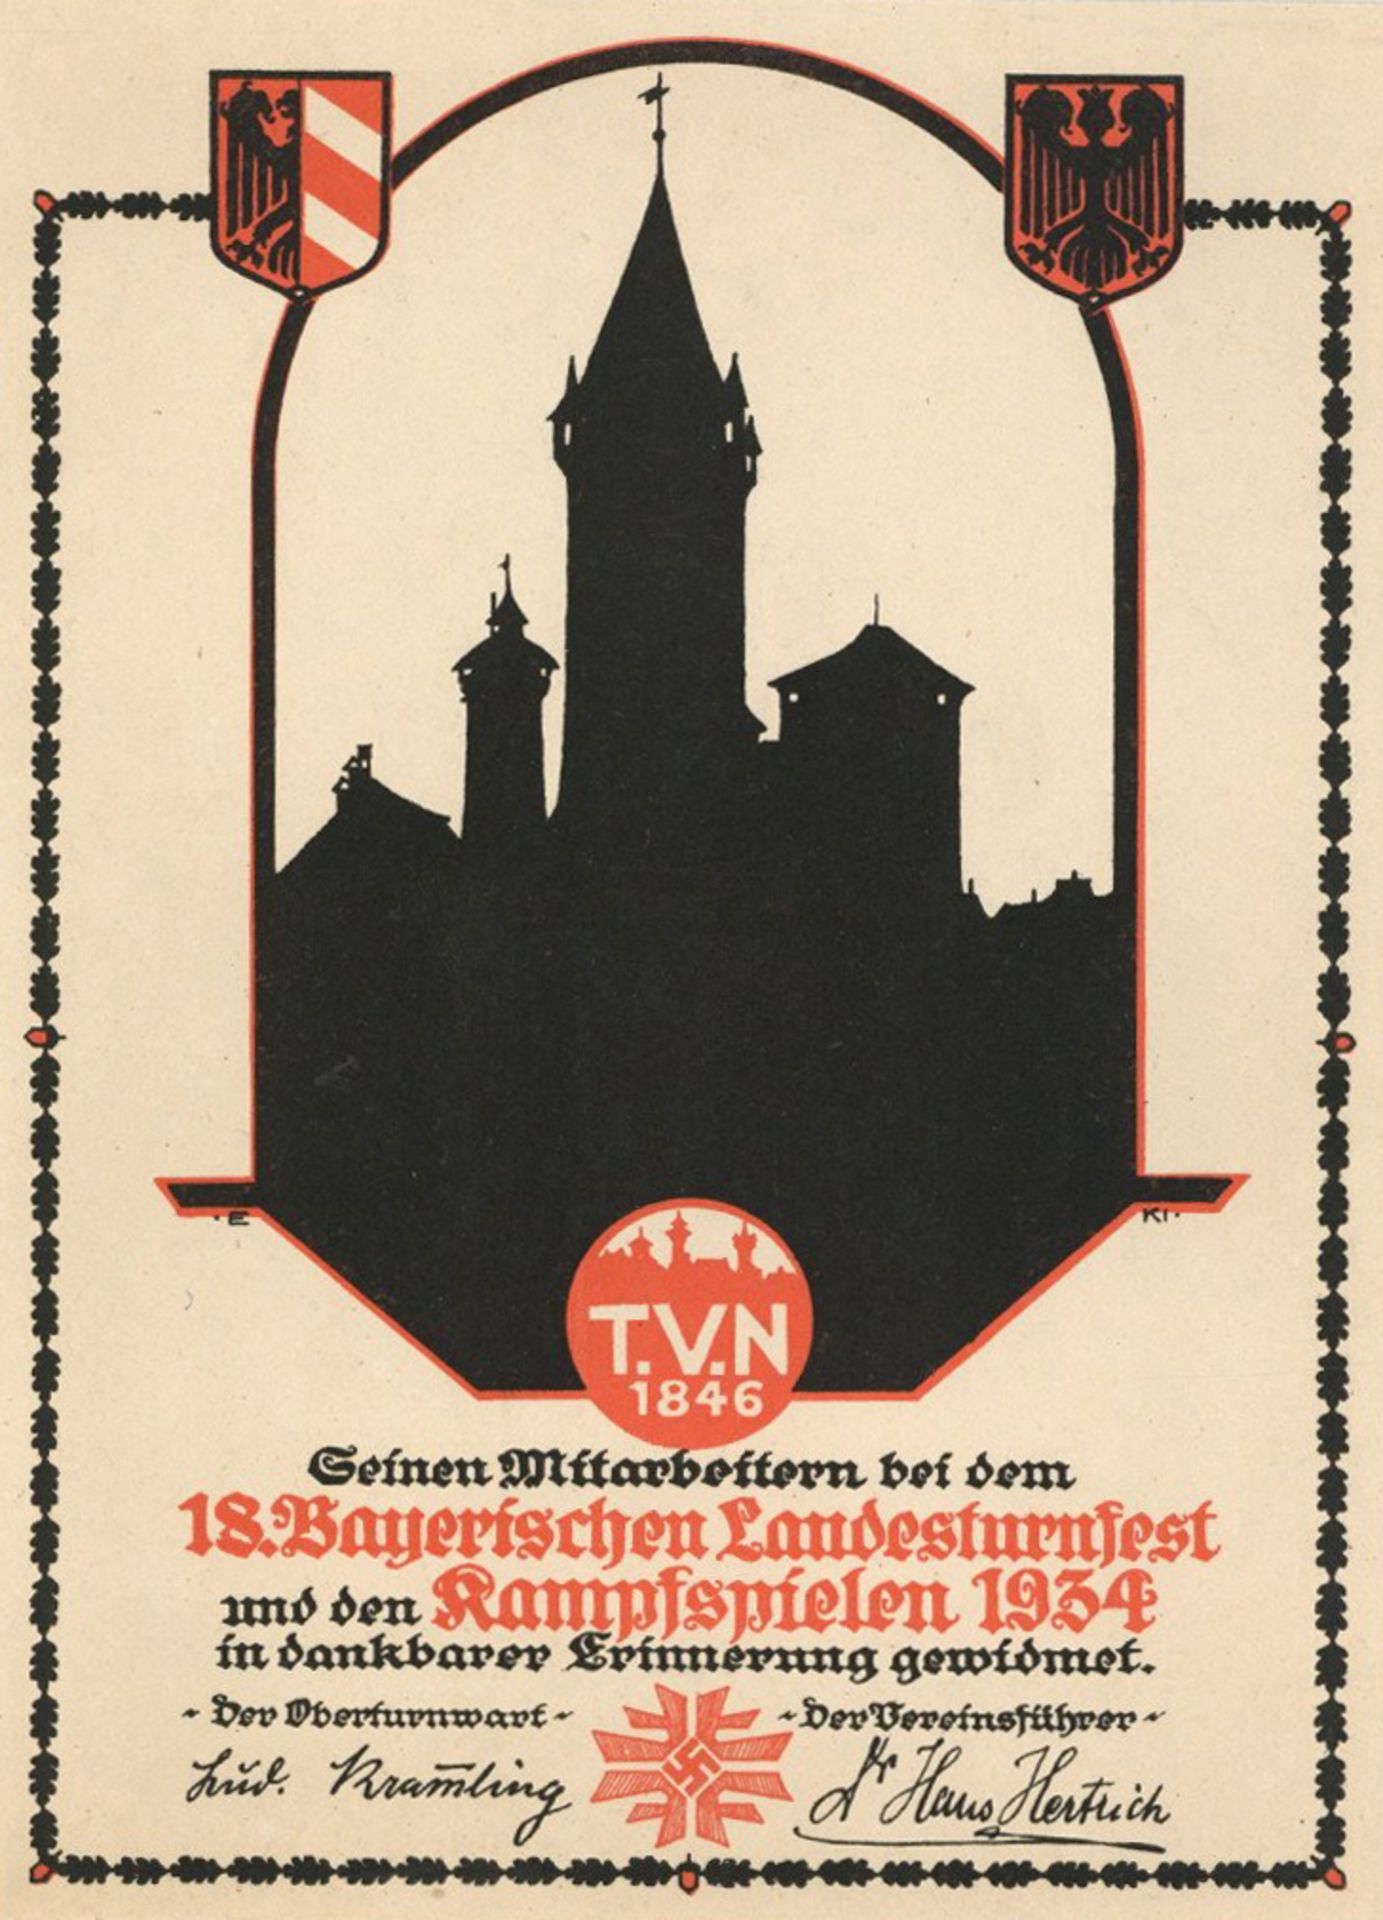 Verleihungsurkunde Nürnberg zum 18. Bayerischen Landesturnfest und den Kampspielen 1934 I-II